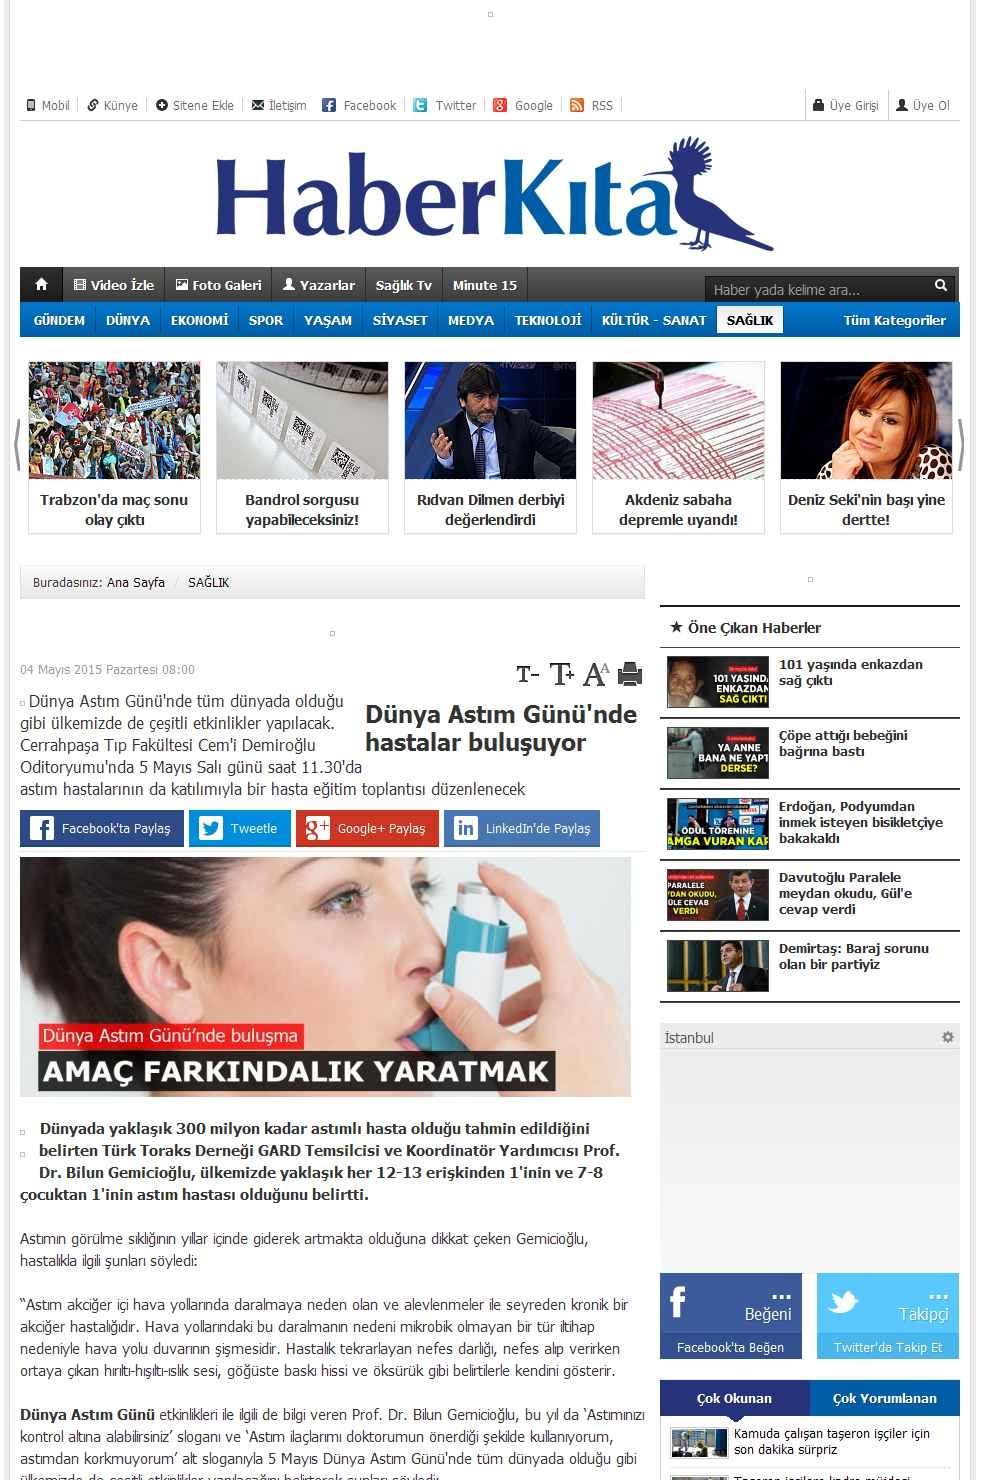 Portal Adres DÜNYA ASTIM GÜNÜ'NDE HASTALAR BULUSUYOR : www.haberkita.